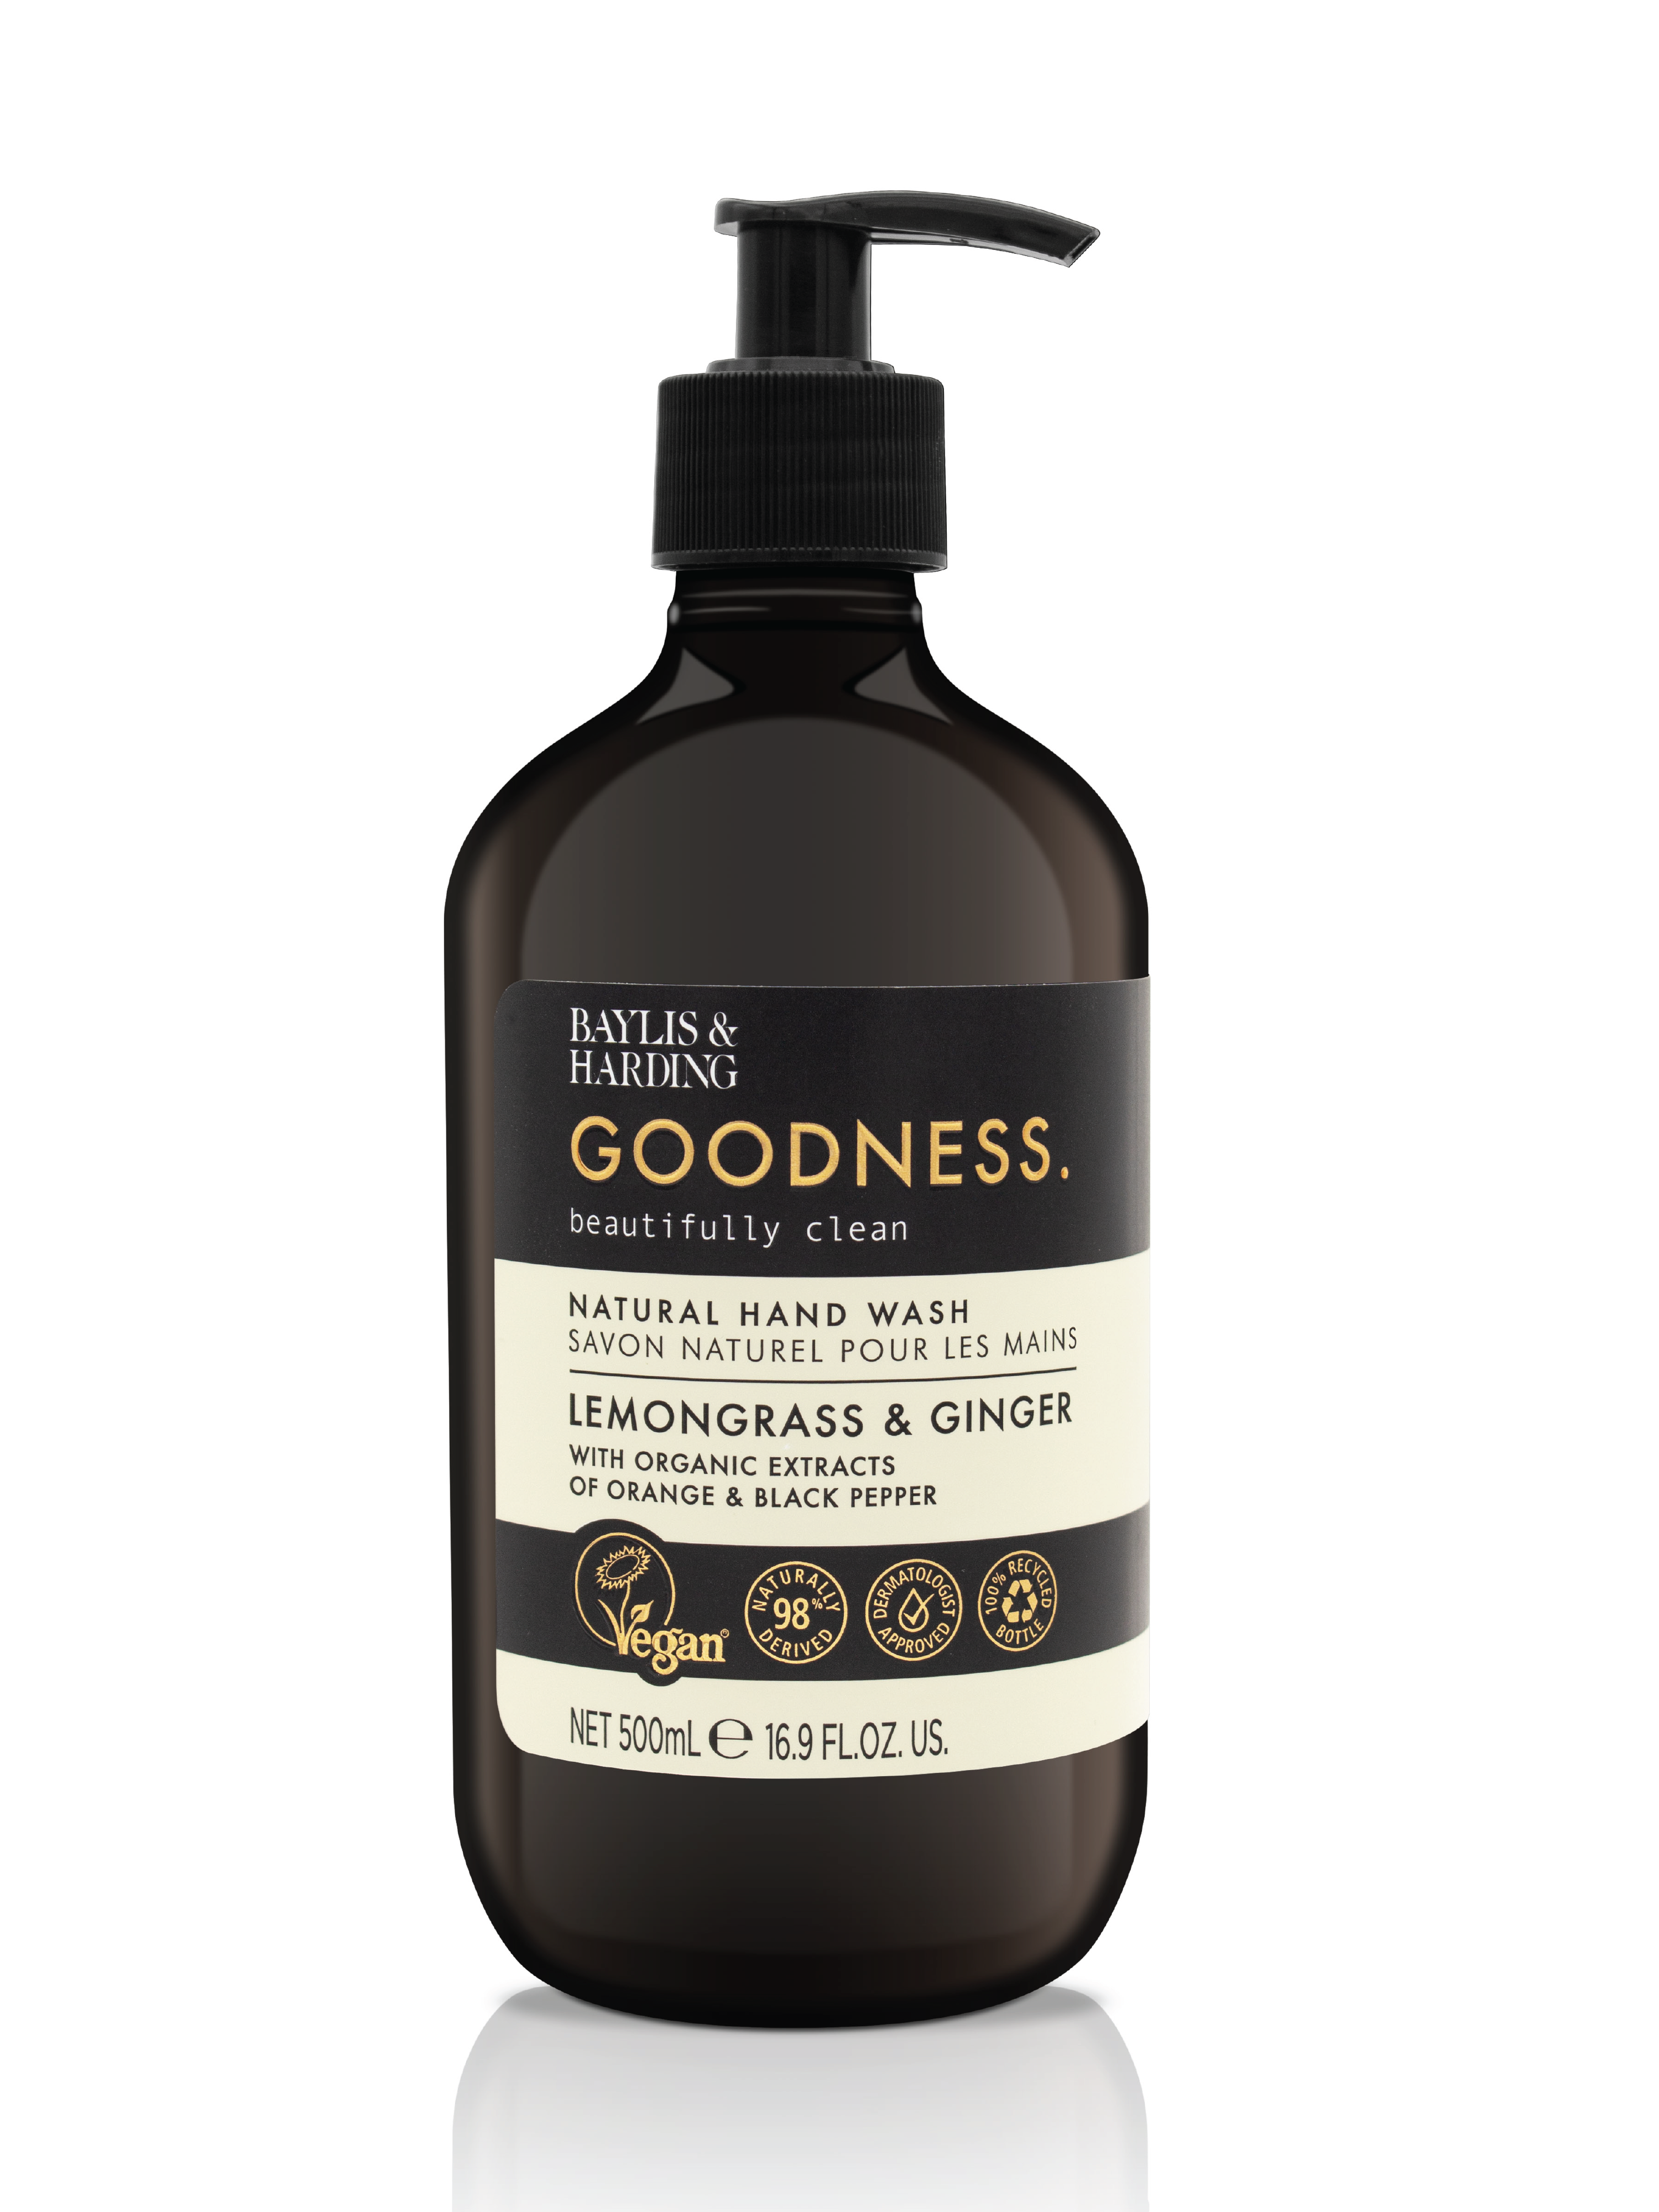 Baylis & Harding Goodness Lemongrass & Ginger Hand Wash, 500 ml